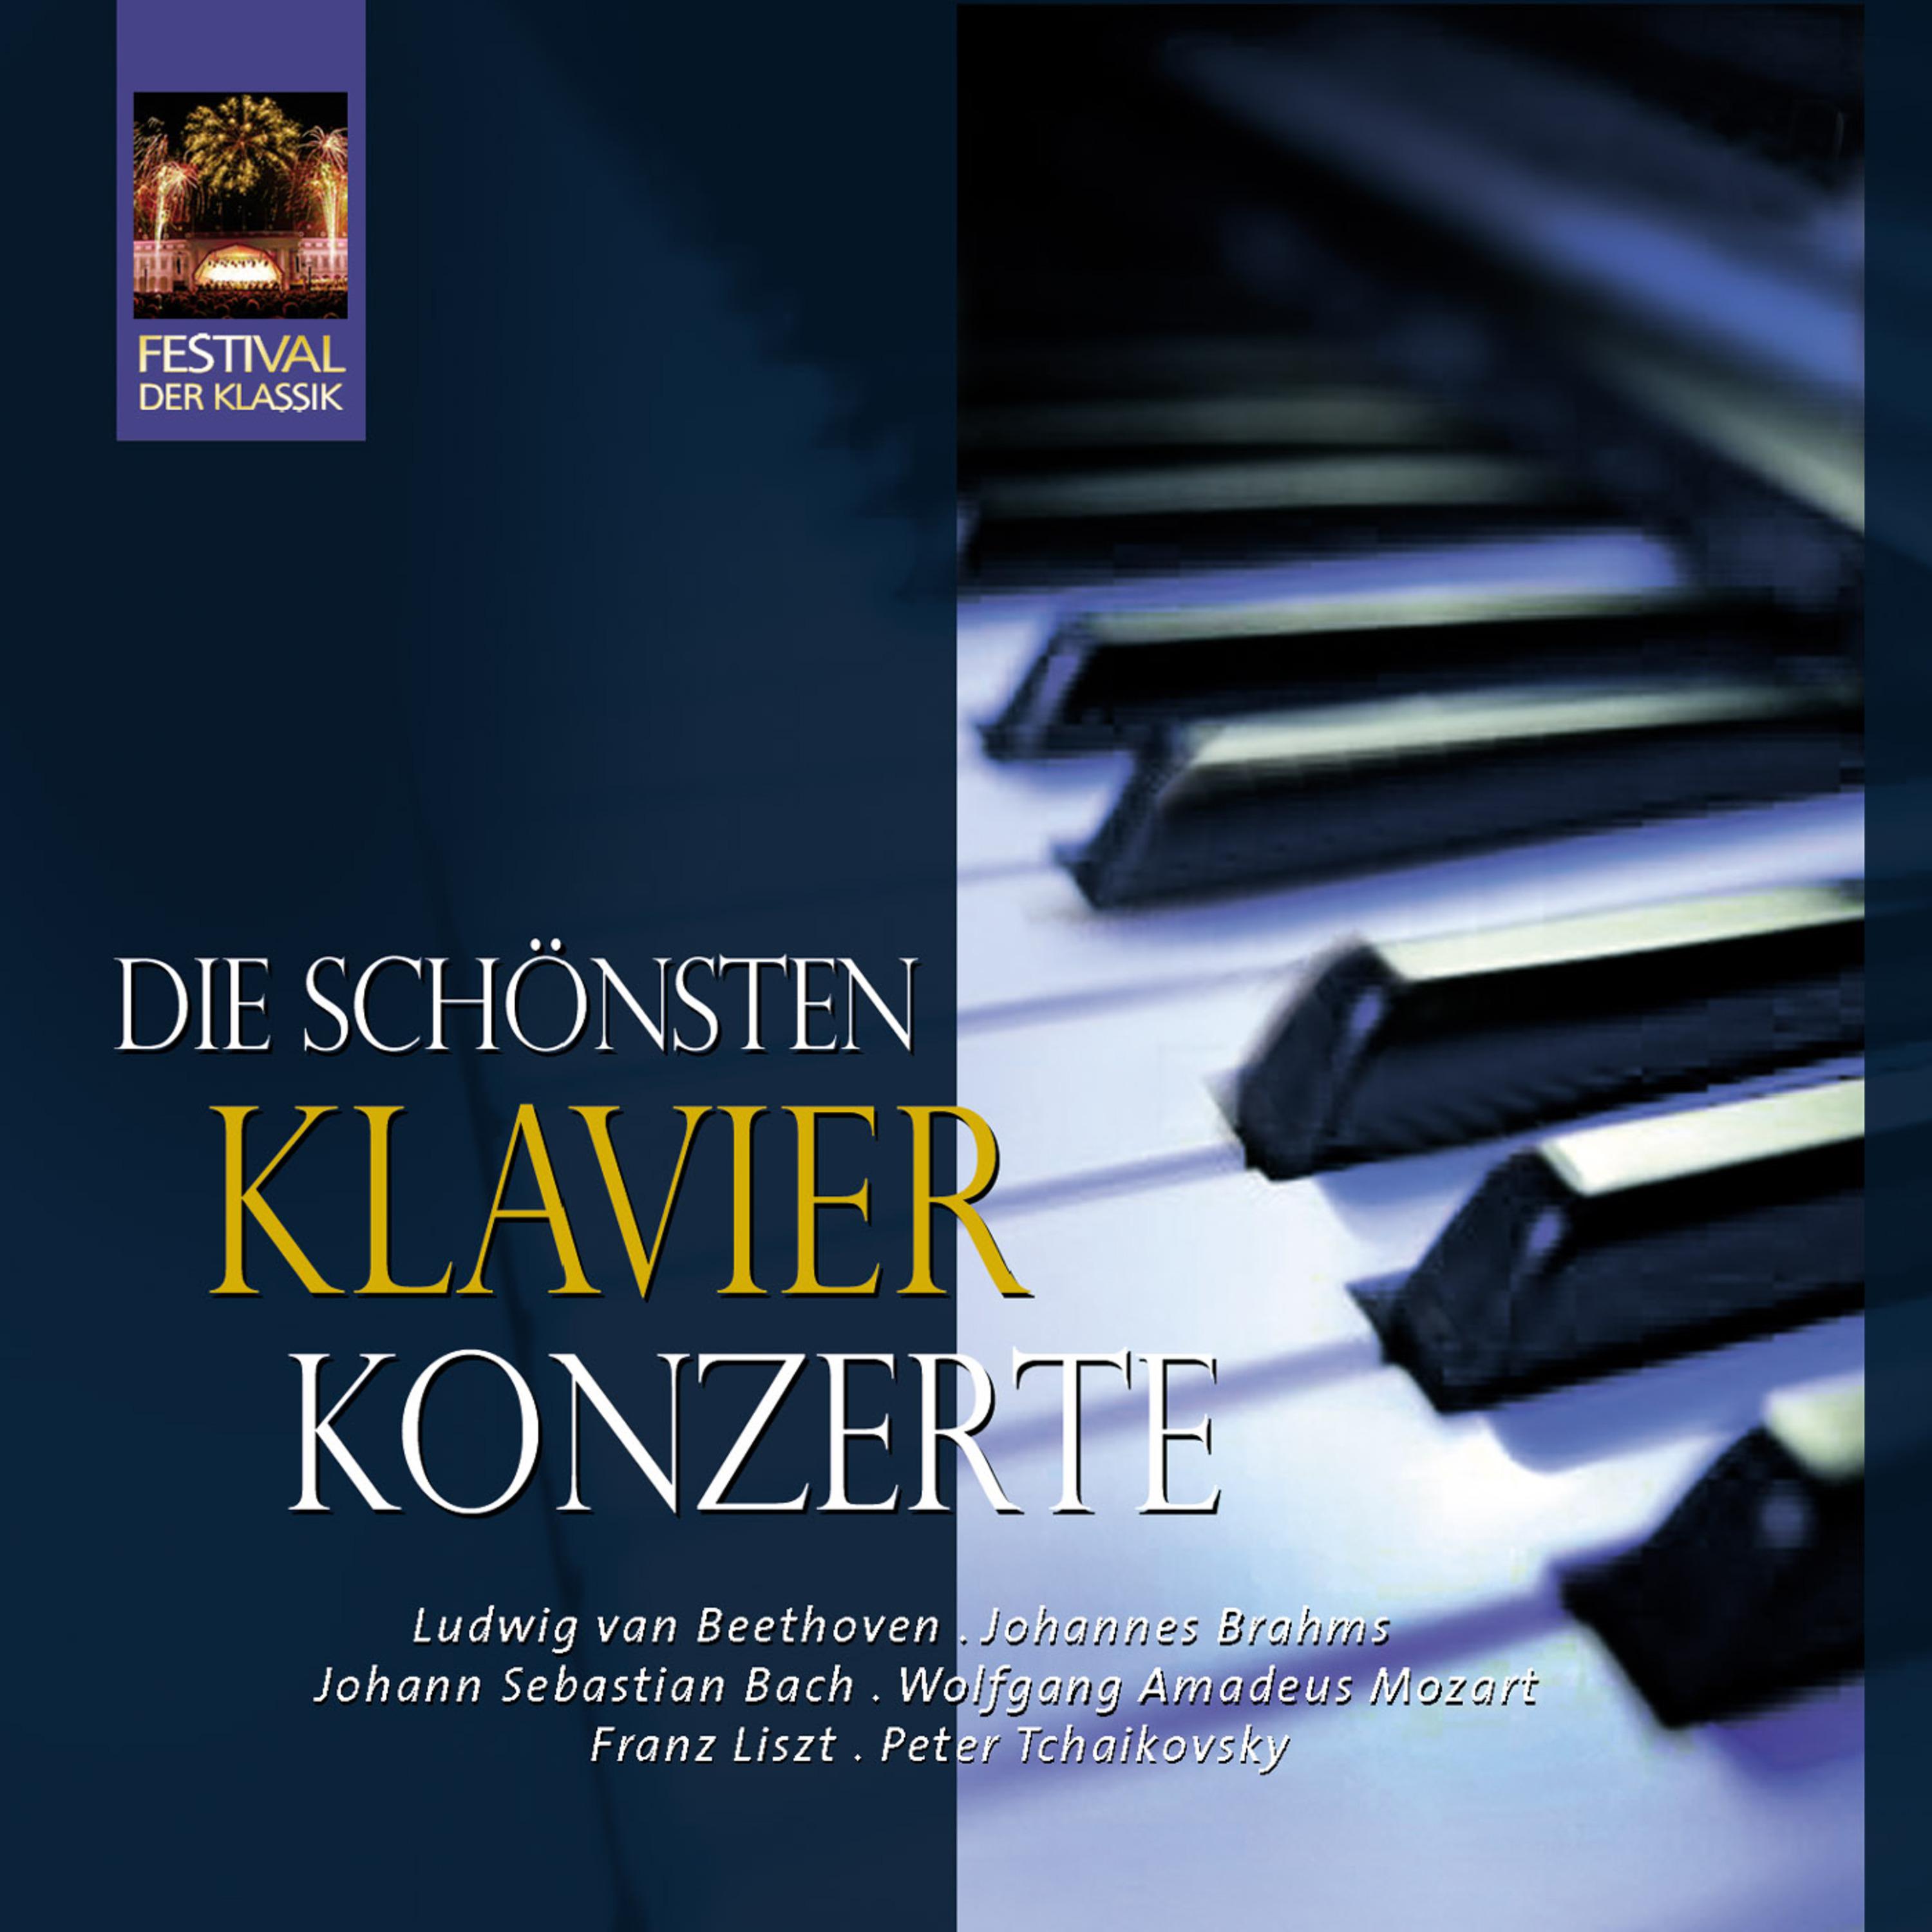 Klavierkonzert No. 21 in C Major, K. 467